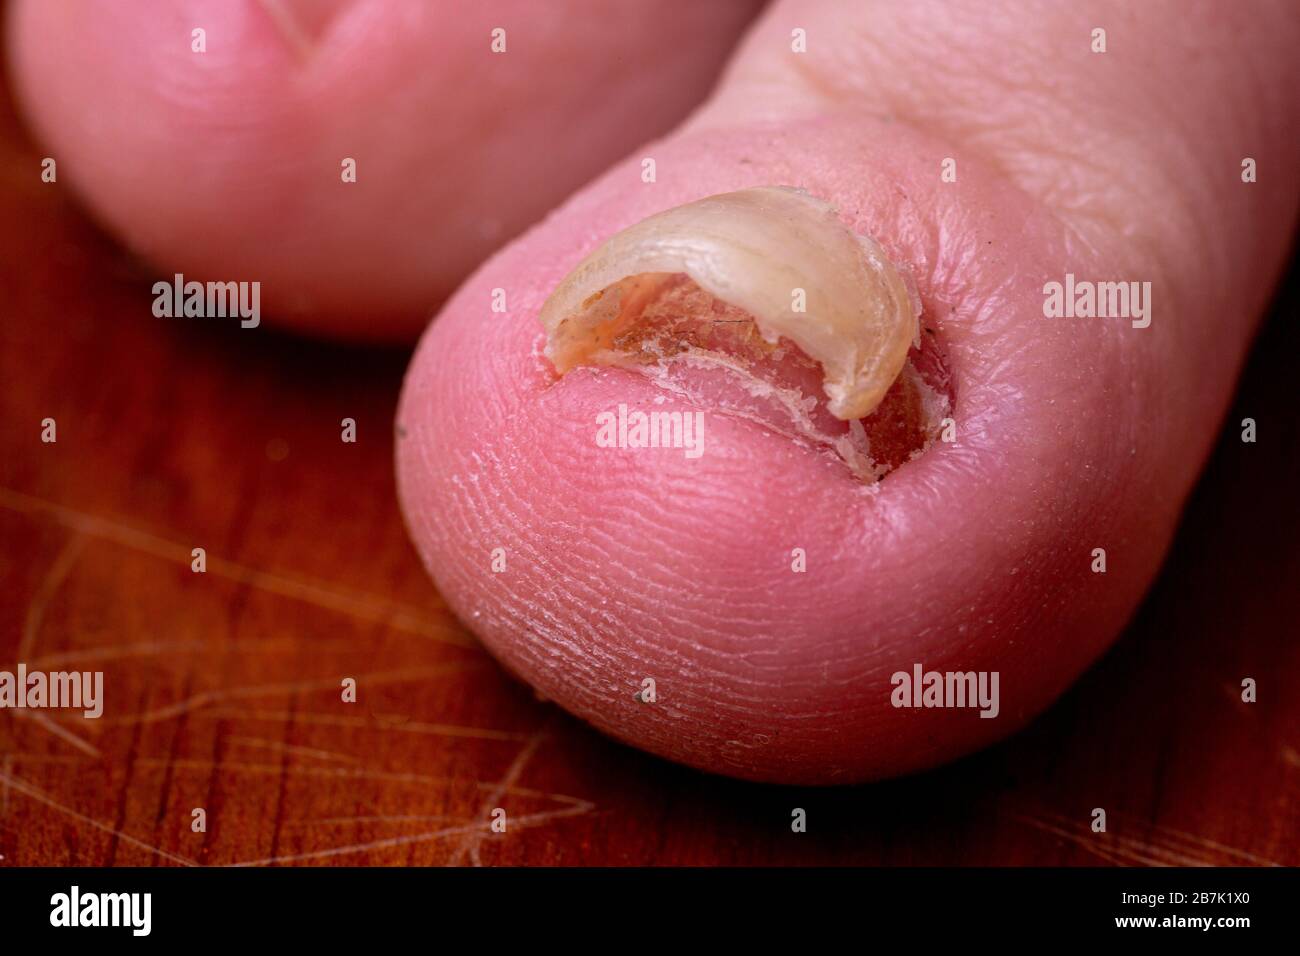 Super primer plano macro de un dedo del pie con micosis trichophyton debajo de una uña desfigurada. Coloración marrón amarilla de una uña de tiza suelta Foto de stock